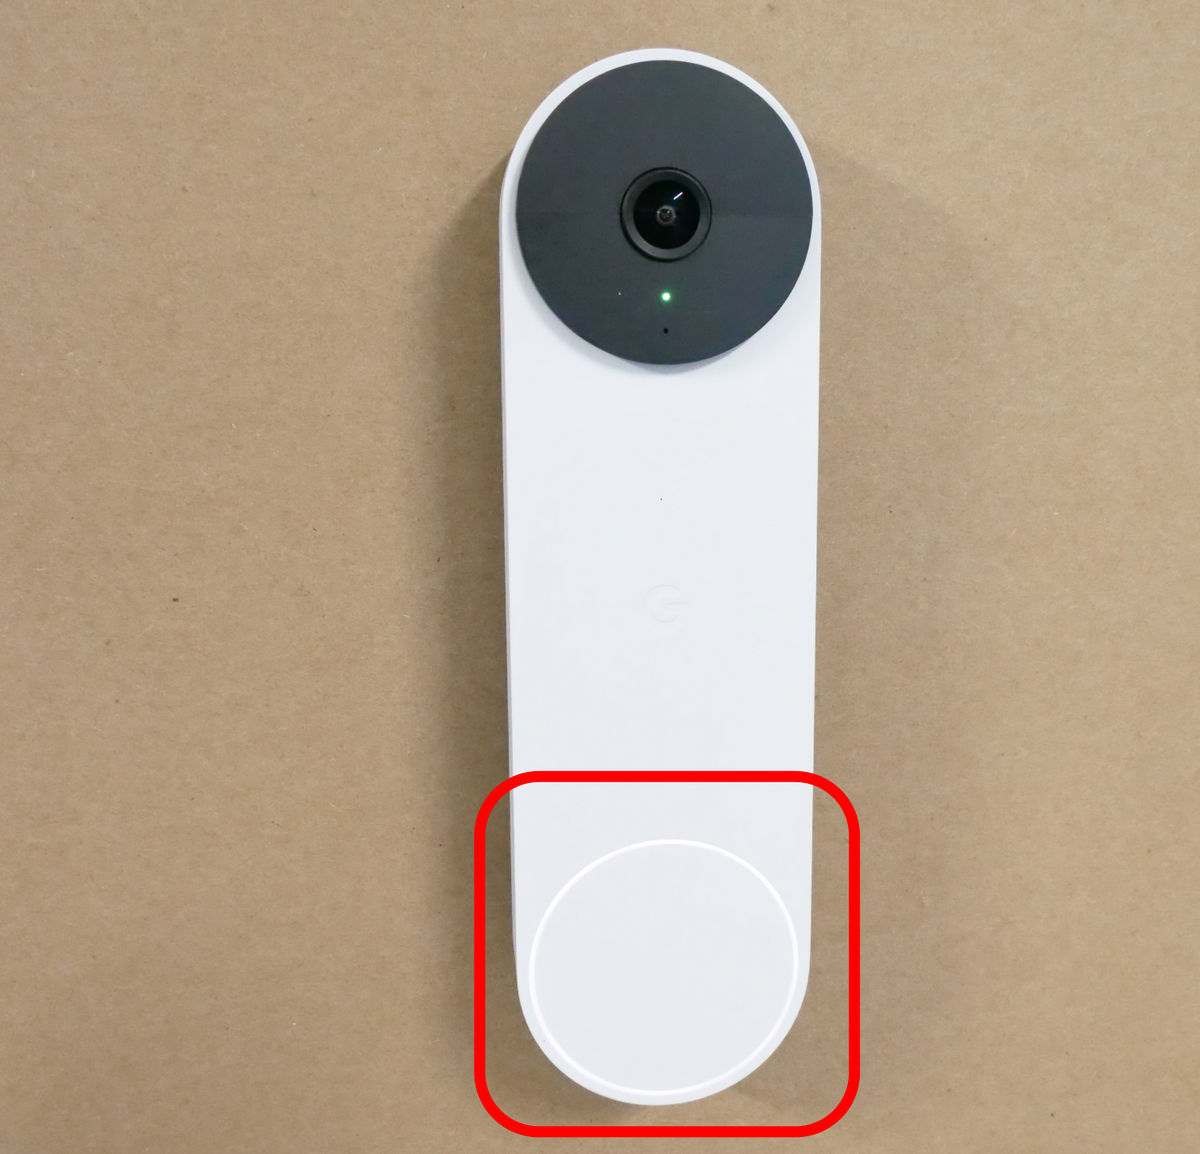 Googleのバッテリー式ドアベル「Google Nest Doorbell」フォトレビュー 